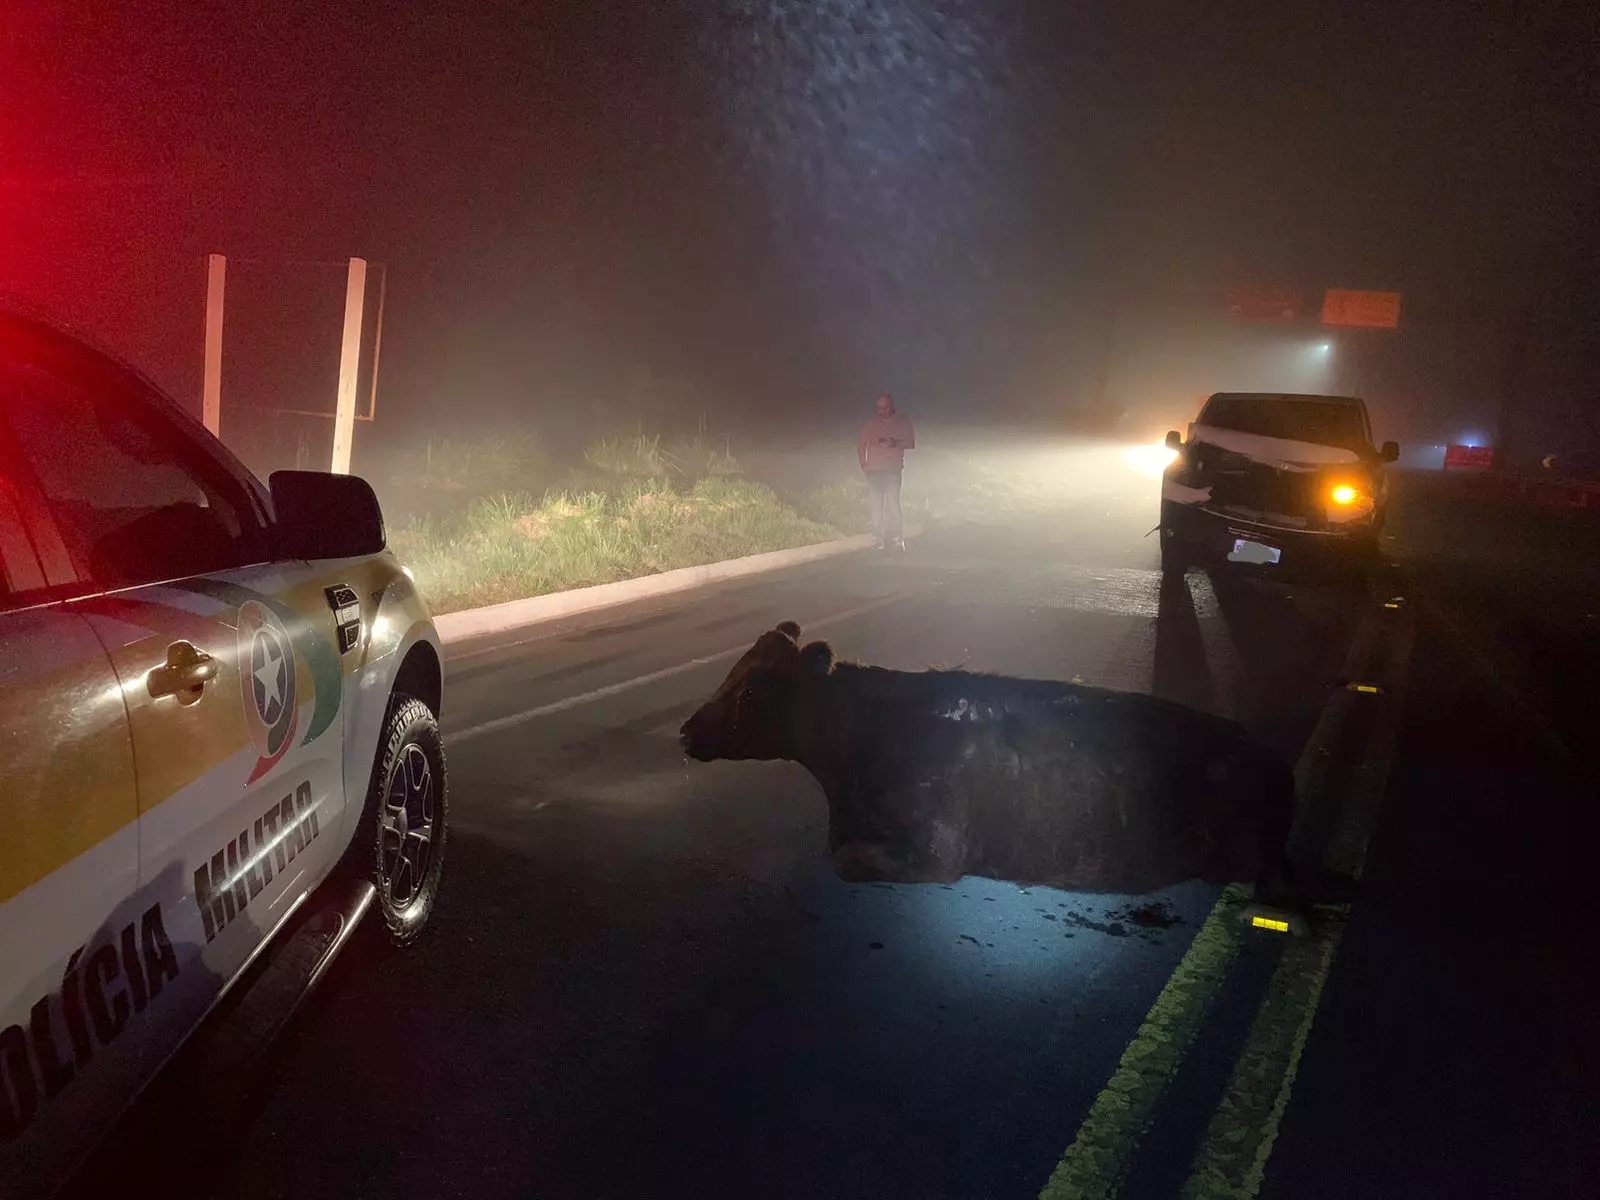 Vaca foi atropelada enquanto atravessava a rodovia | Foto: Polícia Militar Rodoviária (PMRv)